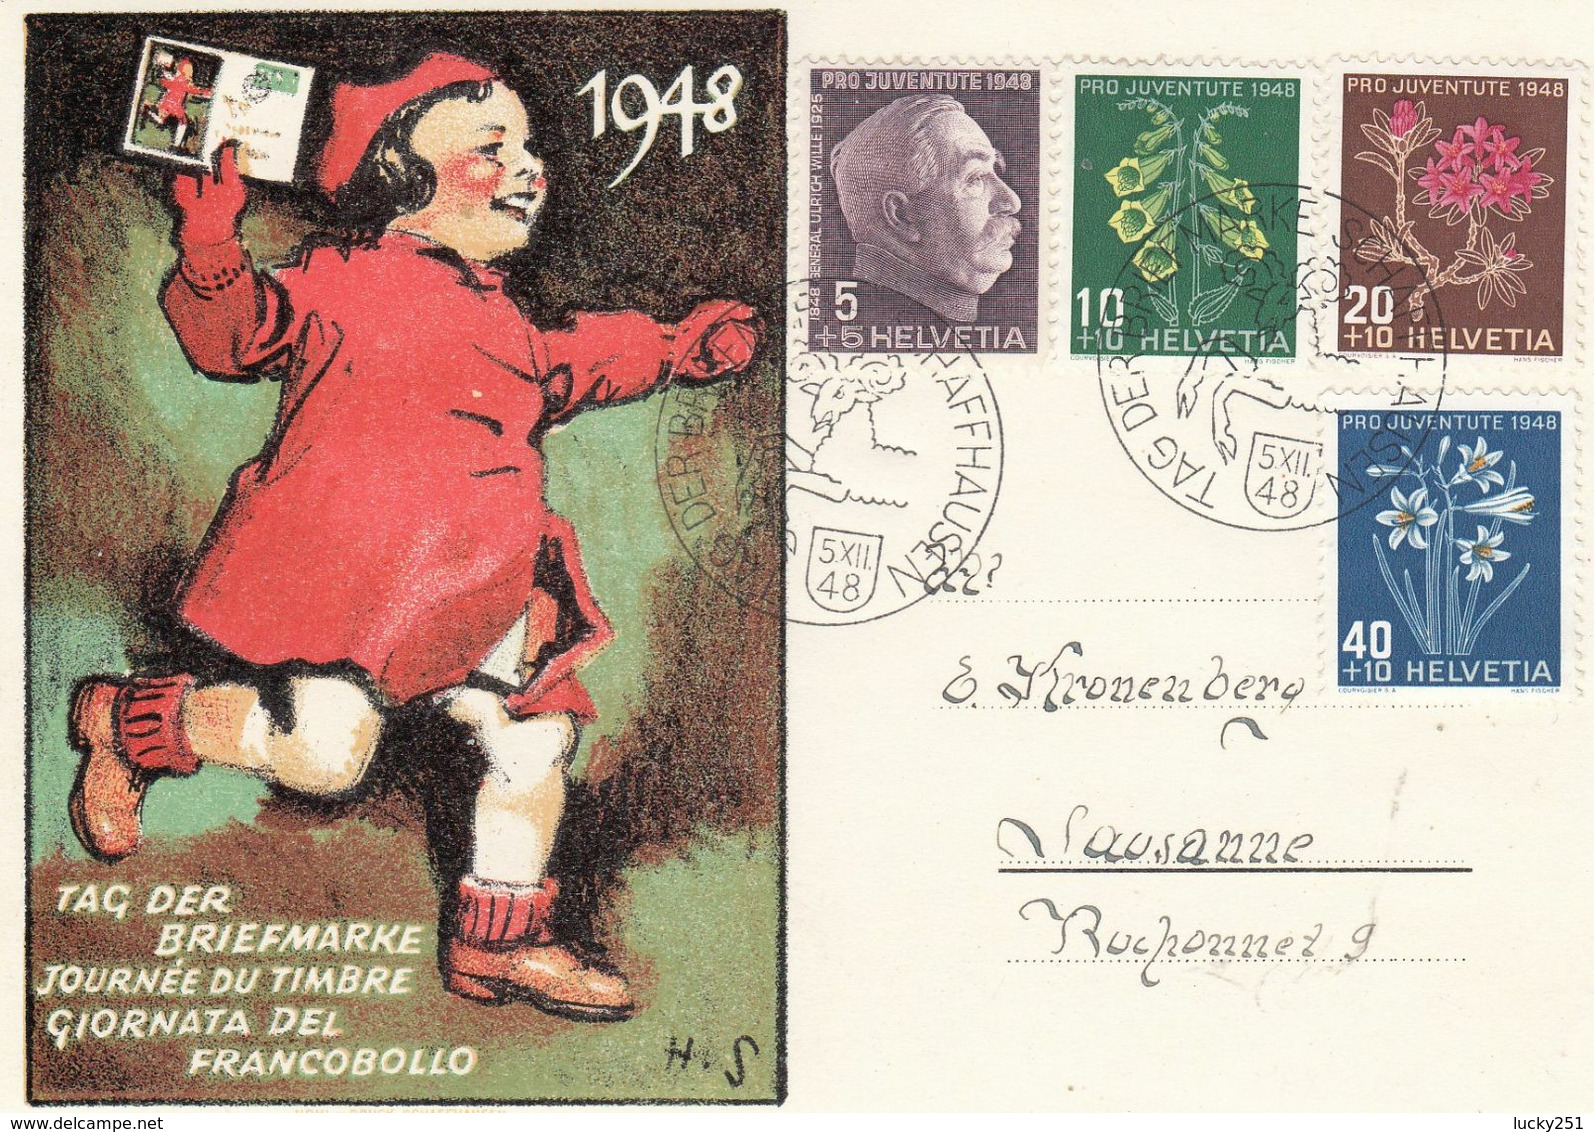 Suisse - Année 1948 - Oblit 05/12/1948 - Journée Du Timbre, Tag Der Biefmarke - Série Pro Juventute - Covers & Documents